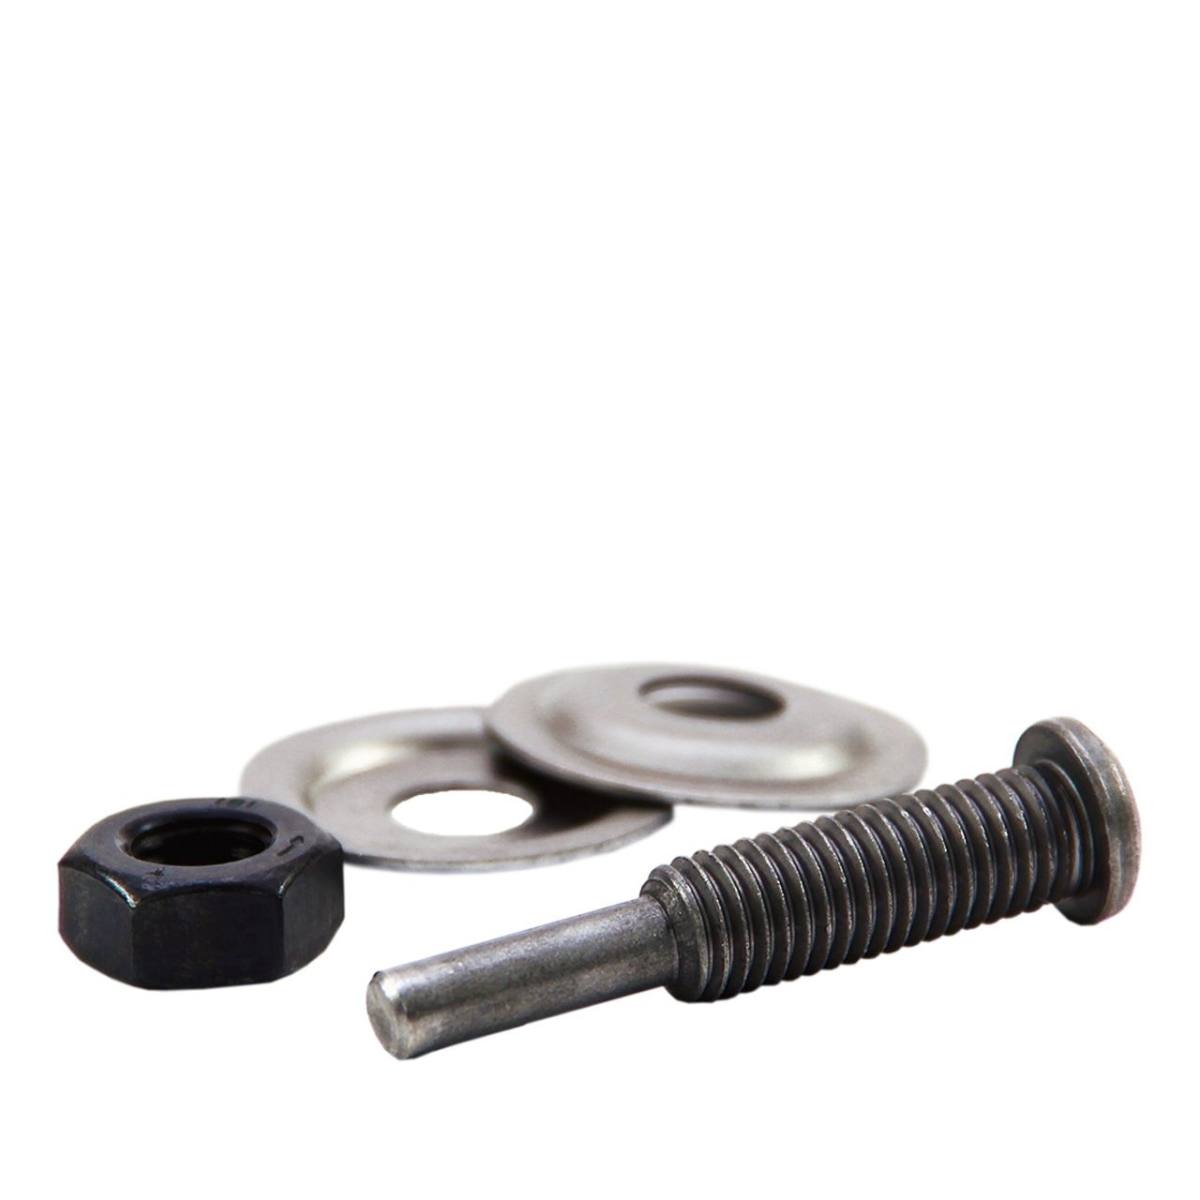 Mandrin MINI MAX, tige en acier de 6 mm, pour anneaux de polissage et roues en fil métallique